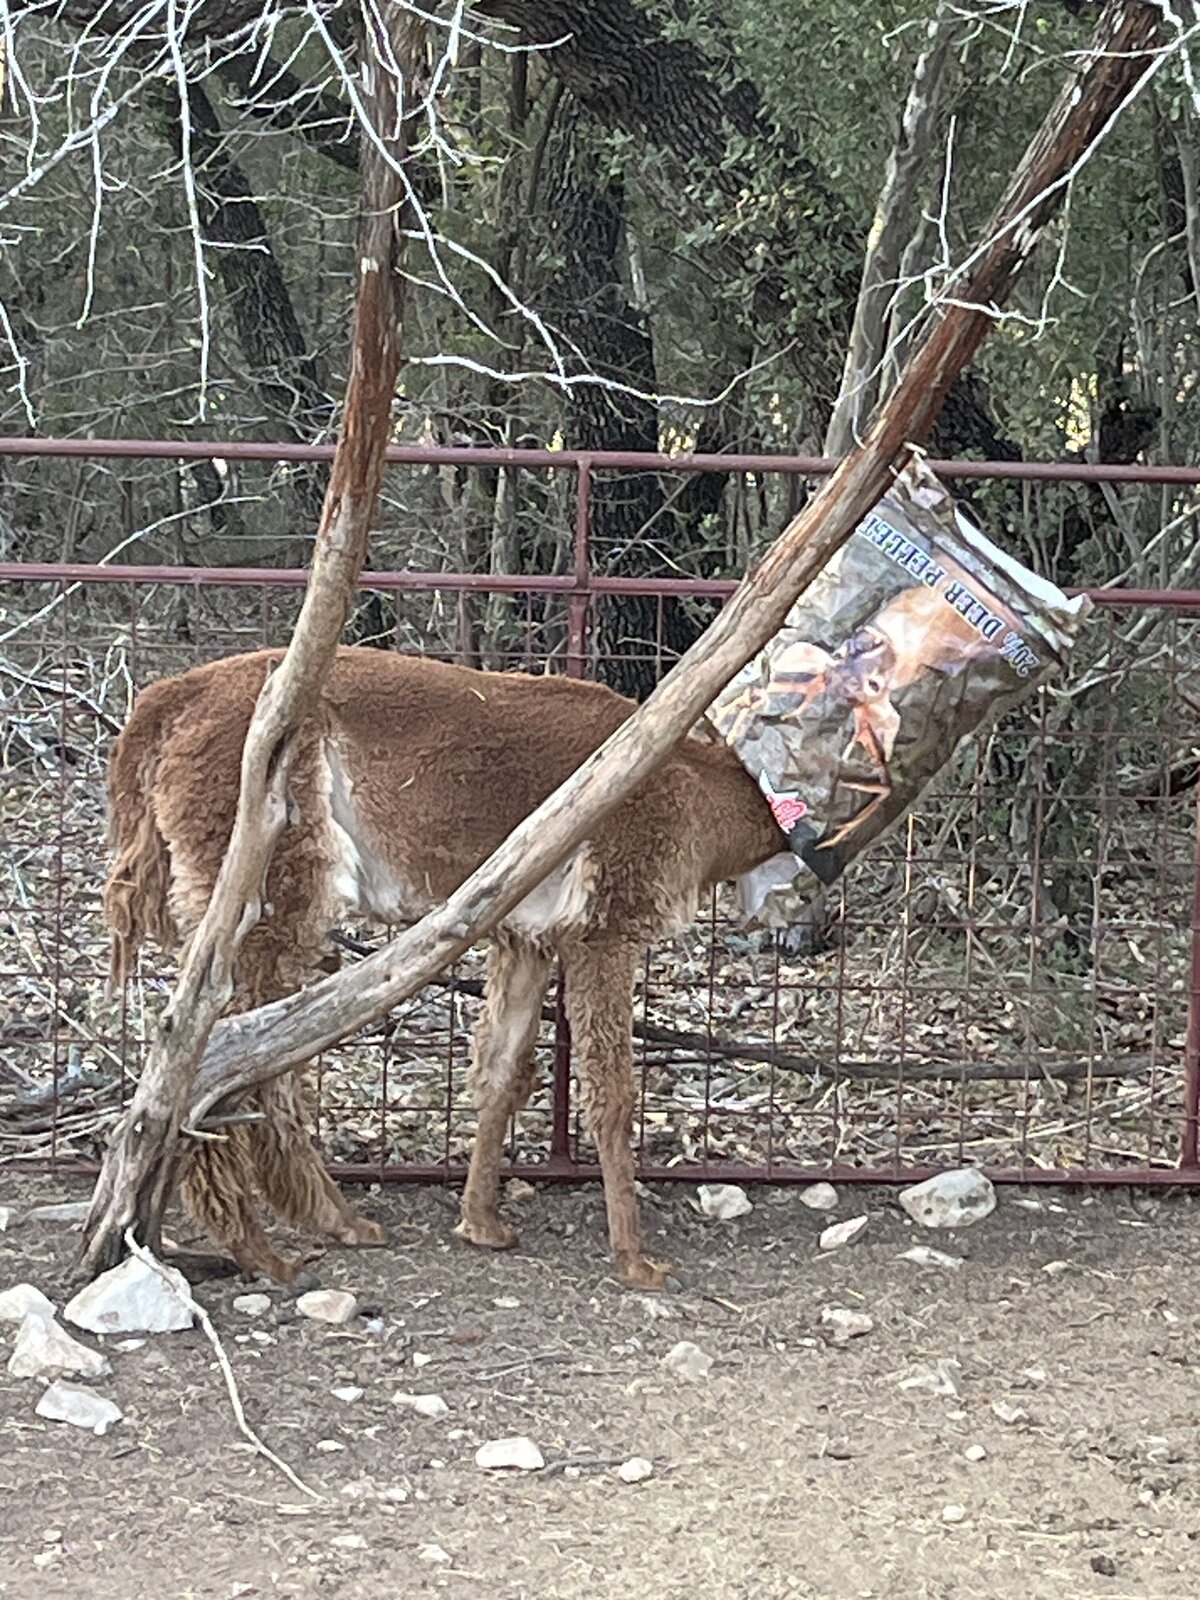 Alpaca with a a bag on the head